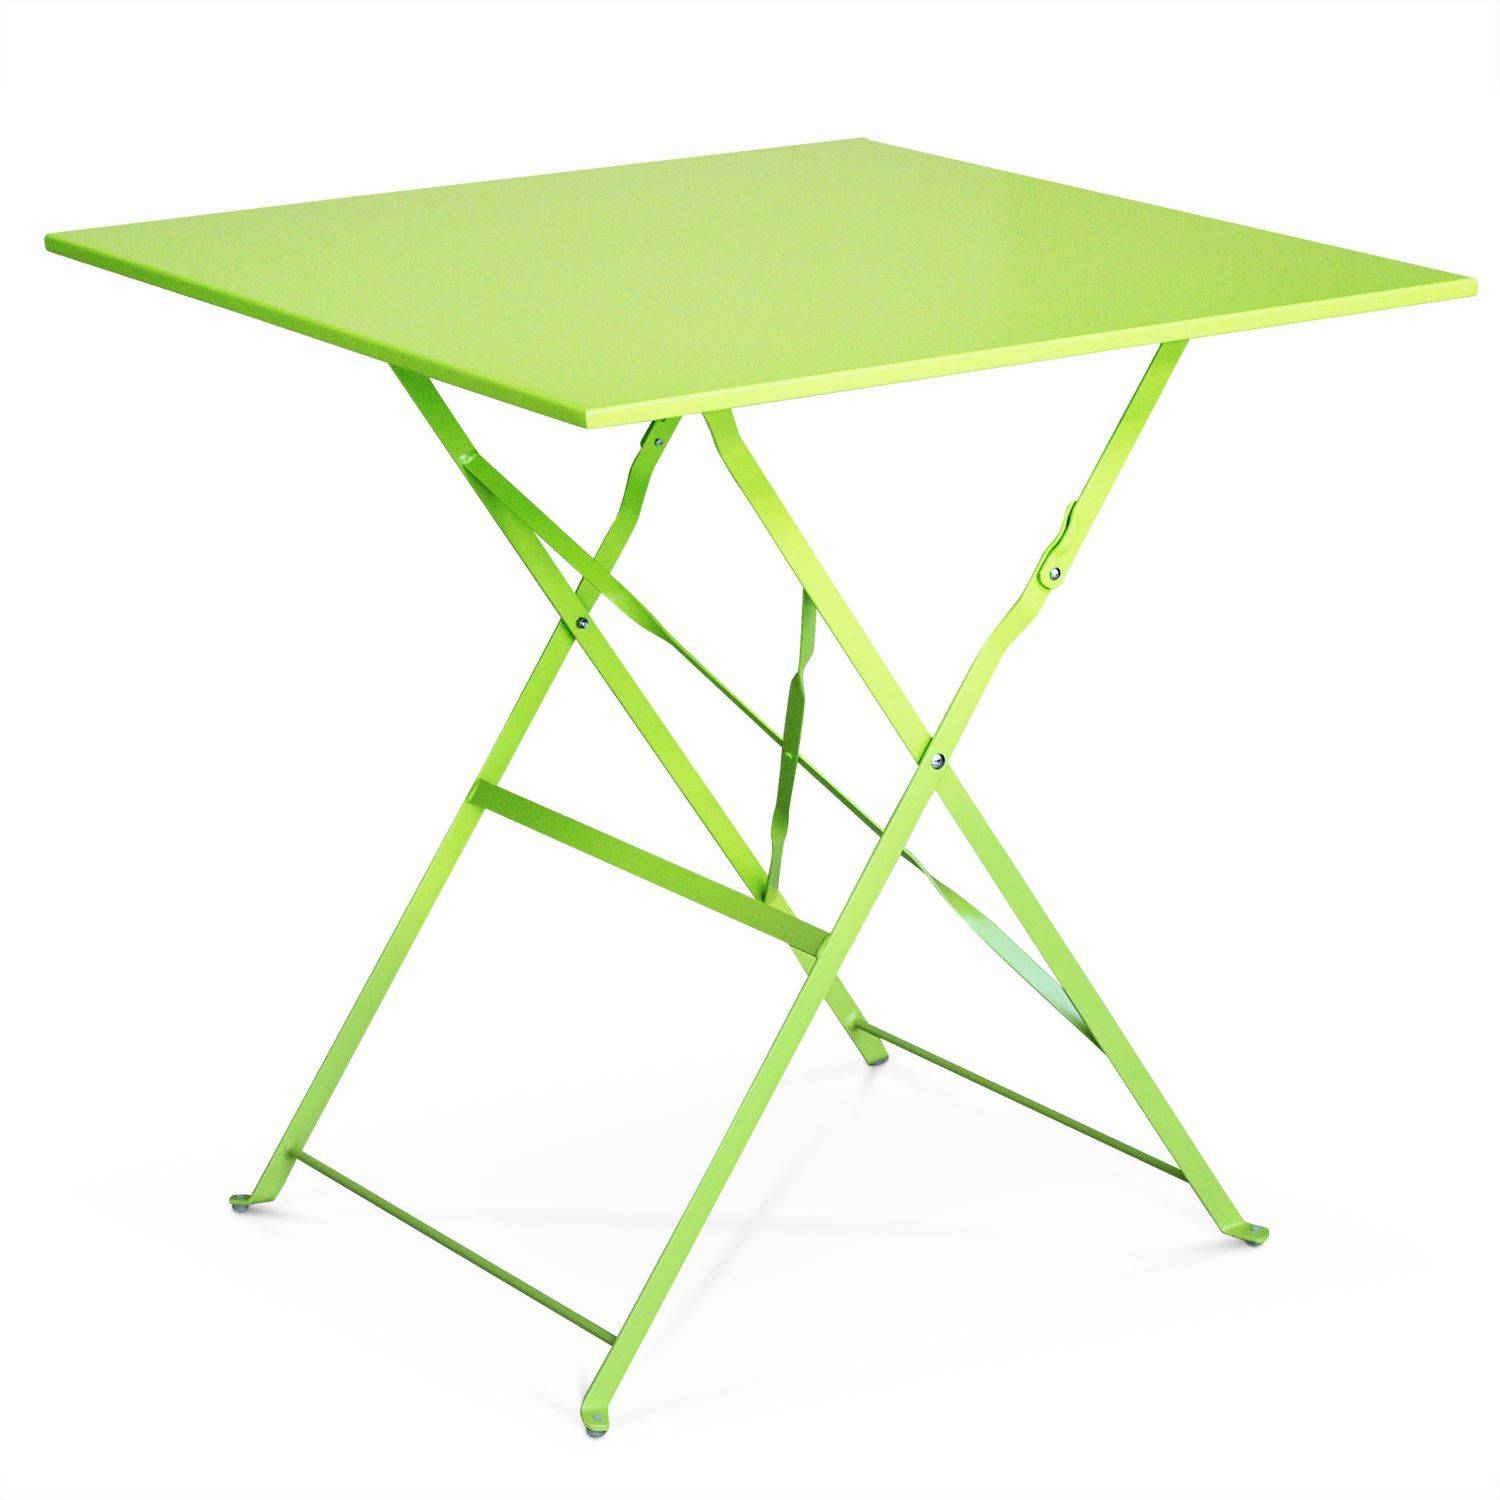 Klappbare Bistro-Gartenmöbel - Emilia quadratisch grün - Quadratischer Tisch 70x70 cm mit zwei Klappstühlen, pulverbeschichtetem Stahl, Stühlen mit gebogenen Latten Photo3